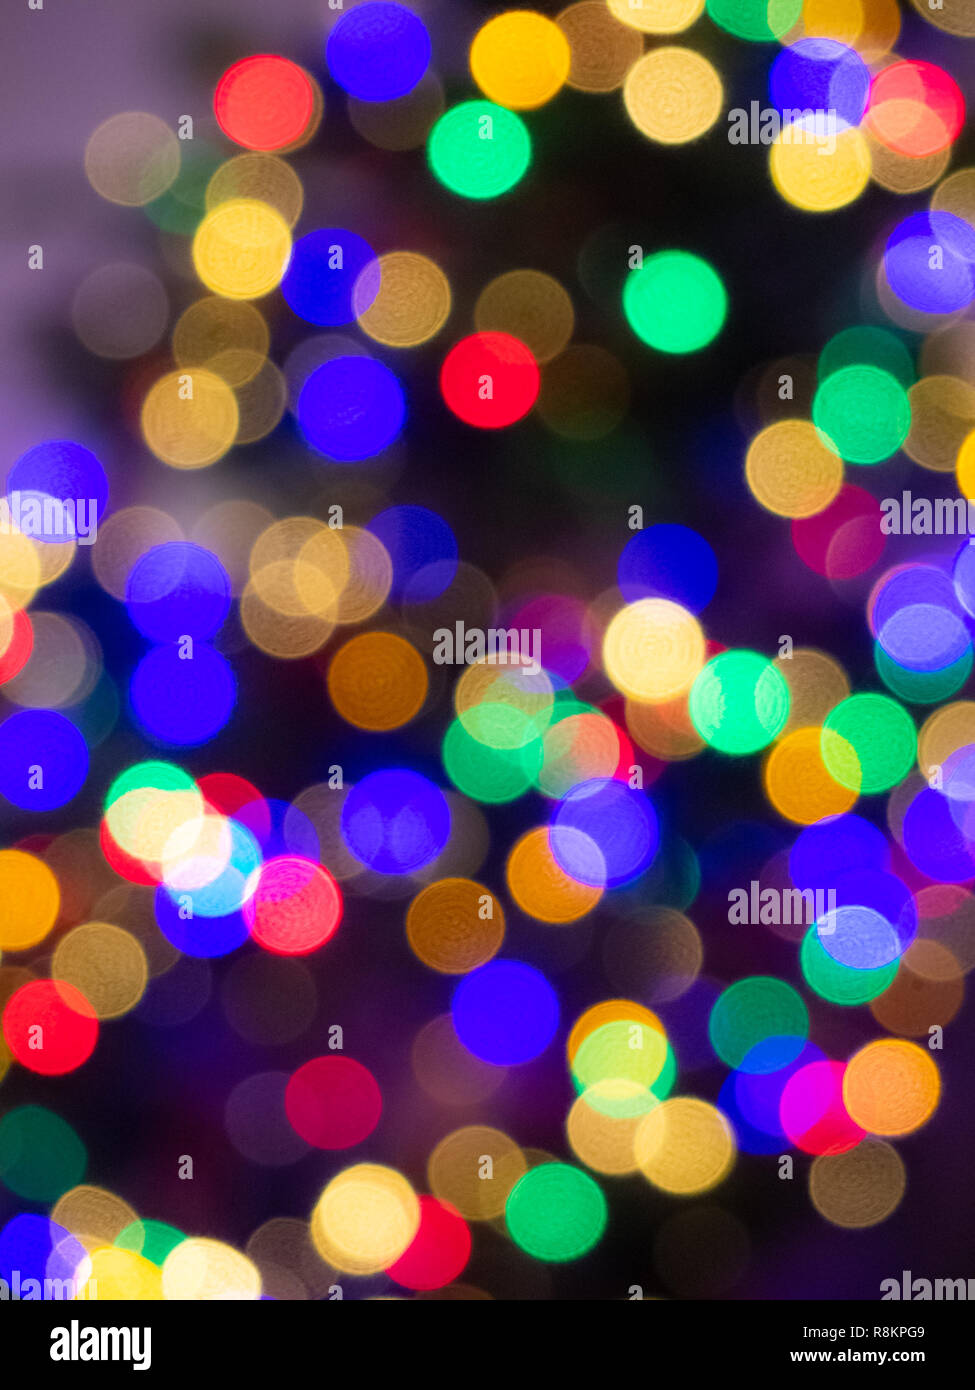 Weihnachtsbaumbeleuchtungen Bokeh - Außerhalb des Fokus Hintergrundbild Stockfoto